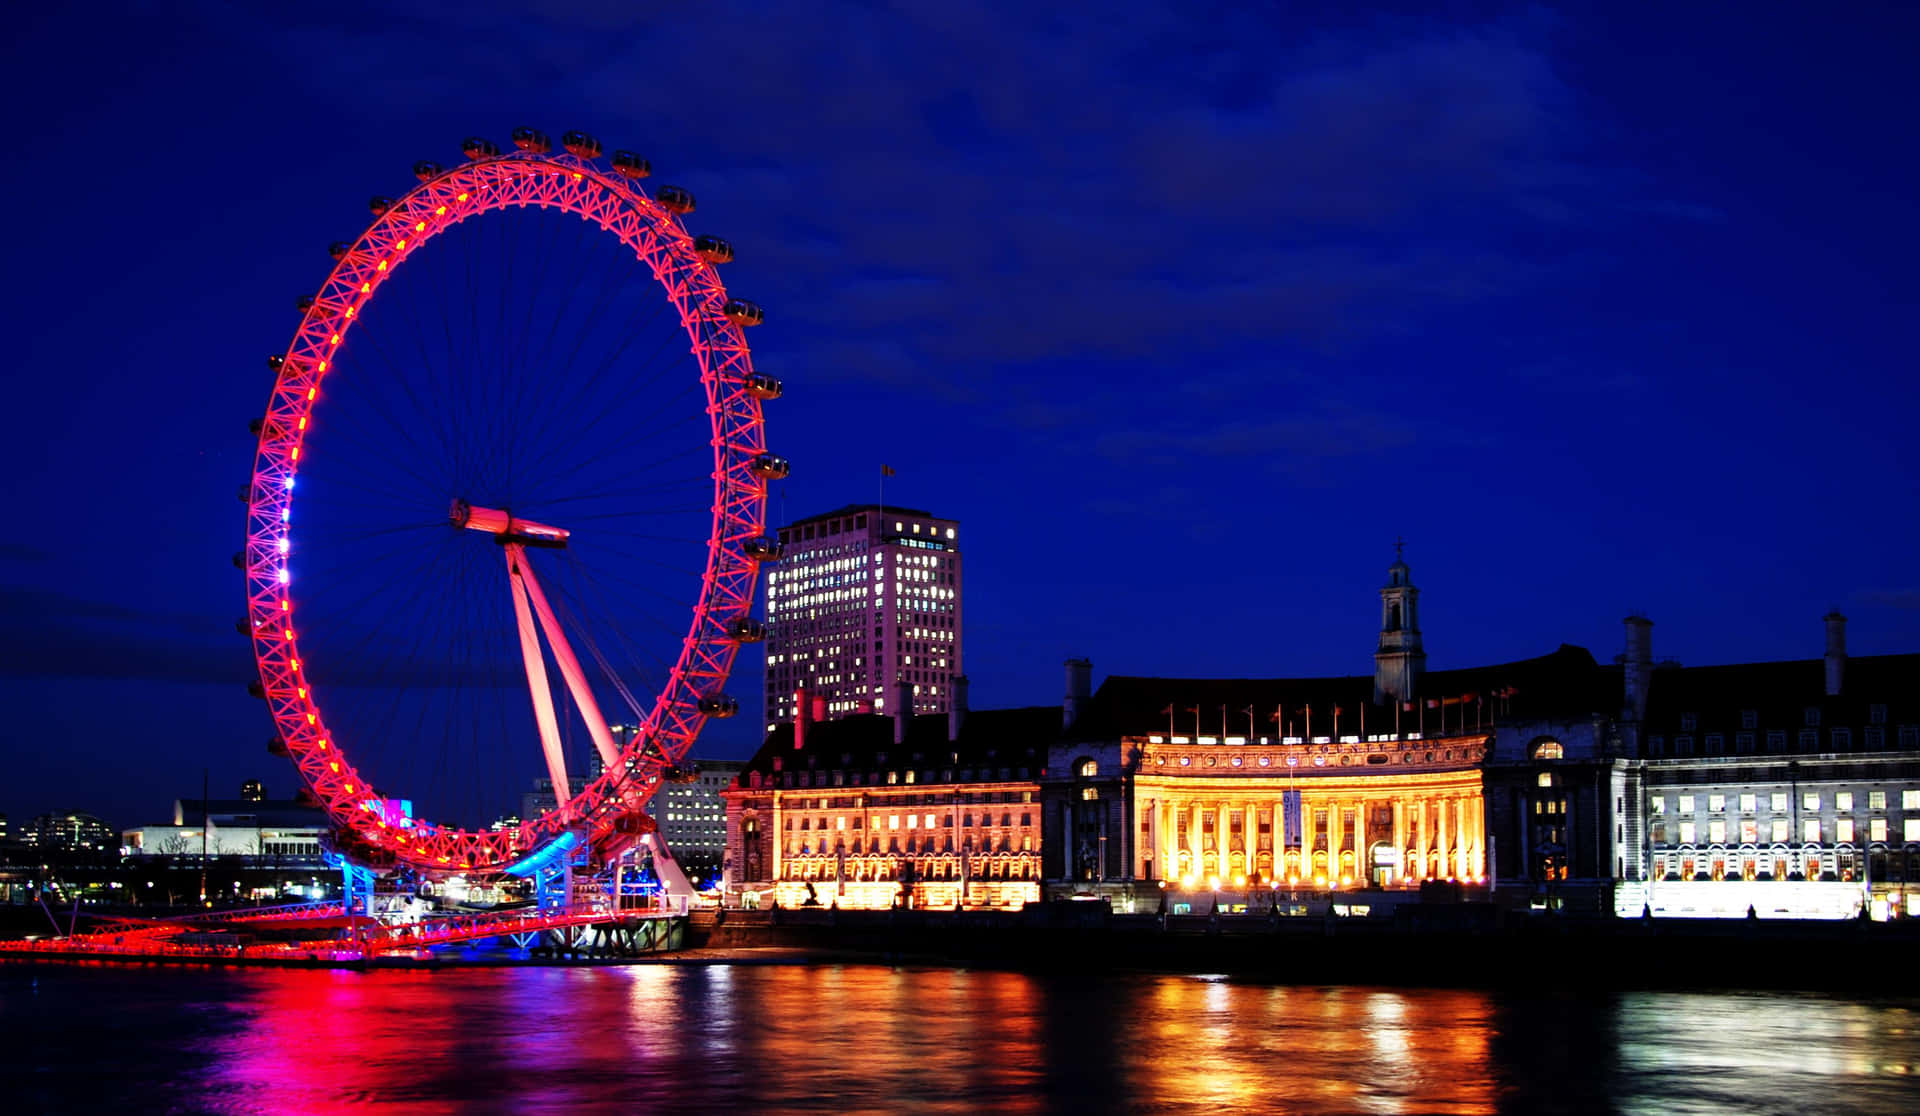 Cielonocturno Morado Sobre El London Eye. Fondo de pantalla